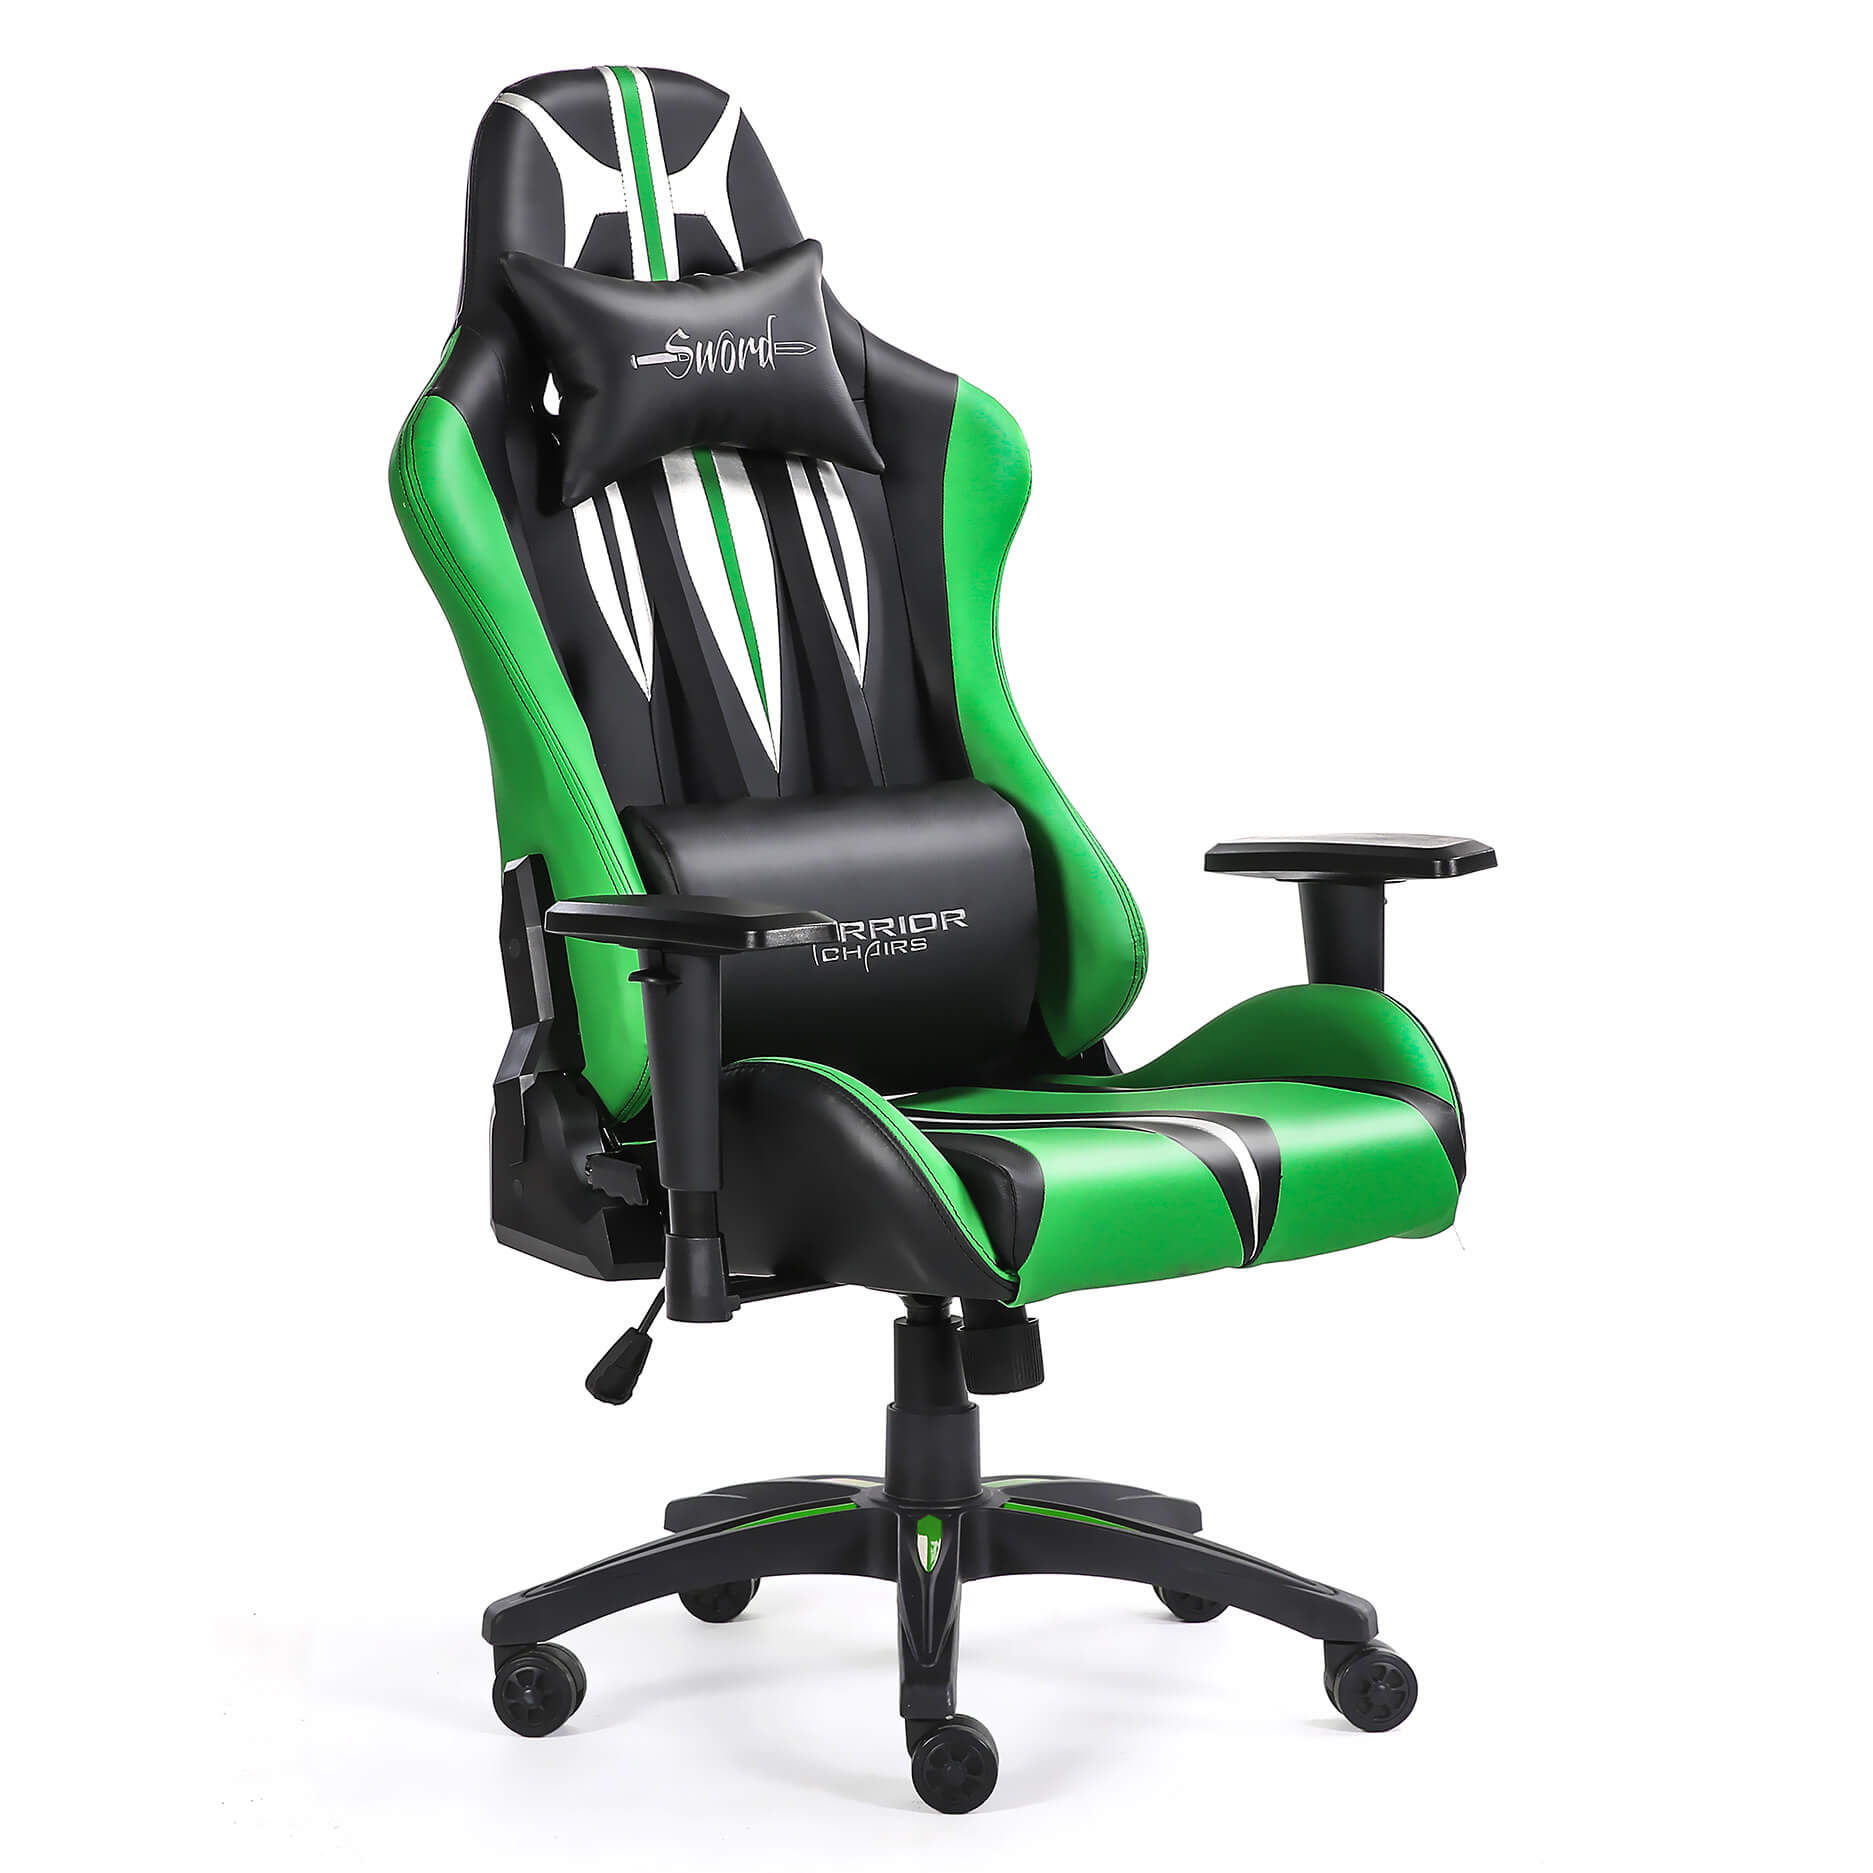 Sword Green Fotel Gamingowy Krzeslo Do Grania Zielone Warrior Chairs